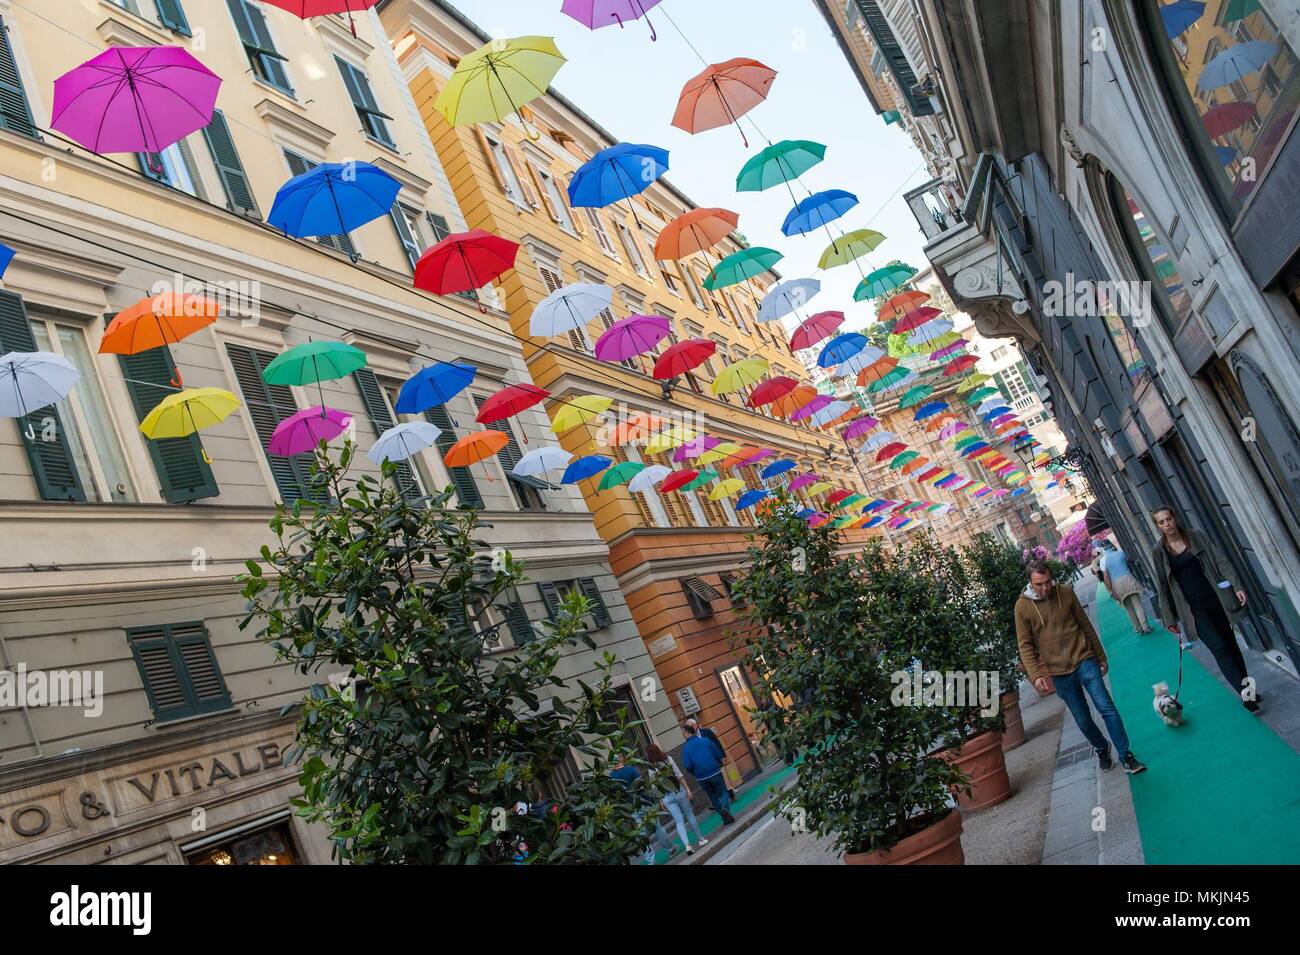 27/04/2018 Genoa (Italy) Umbrellas hanging on the top of the GenoaÂ´  streets as touristic attraction. / Paraguas colgados en las calles del  centro de la ciudad de GÃ©nova como reclamo turÃstico. The